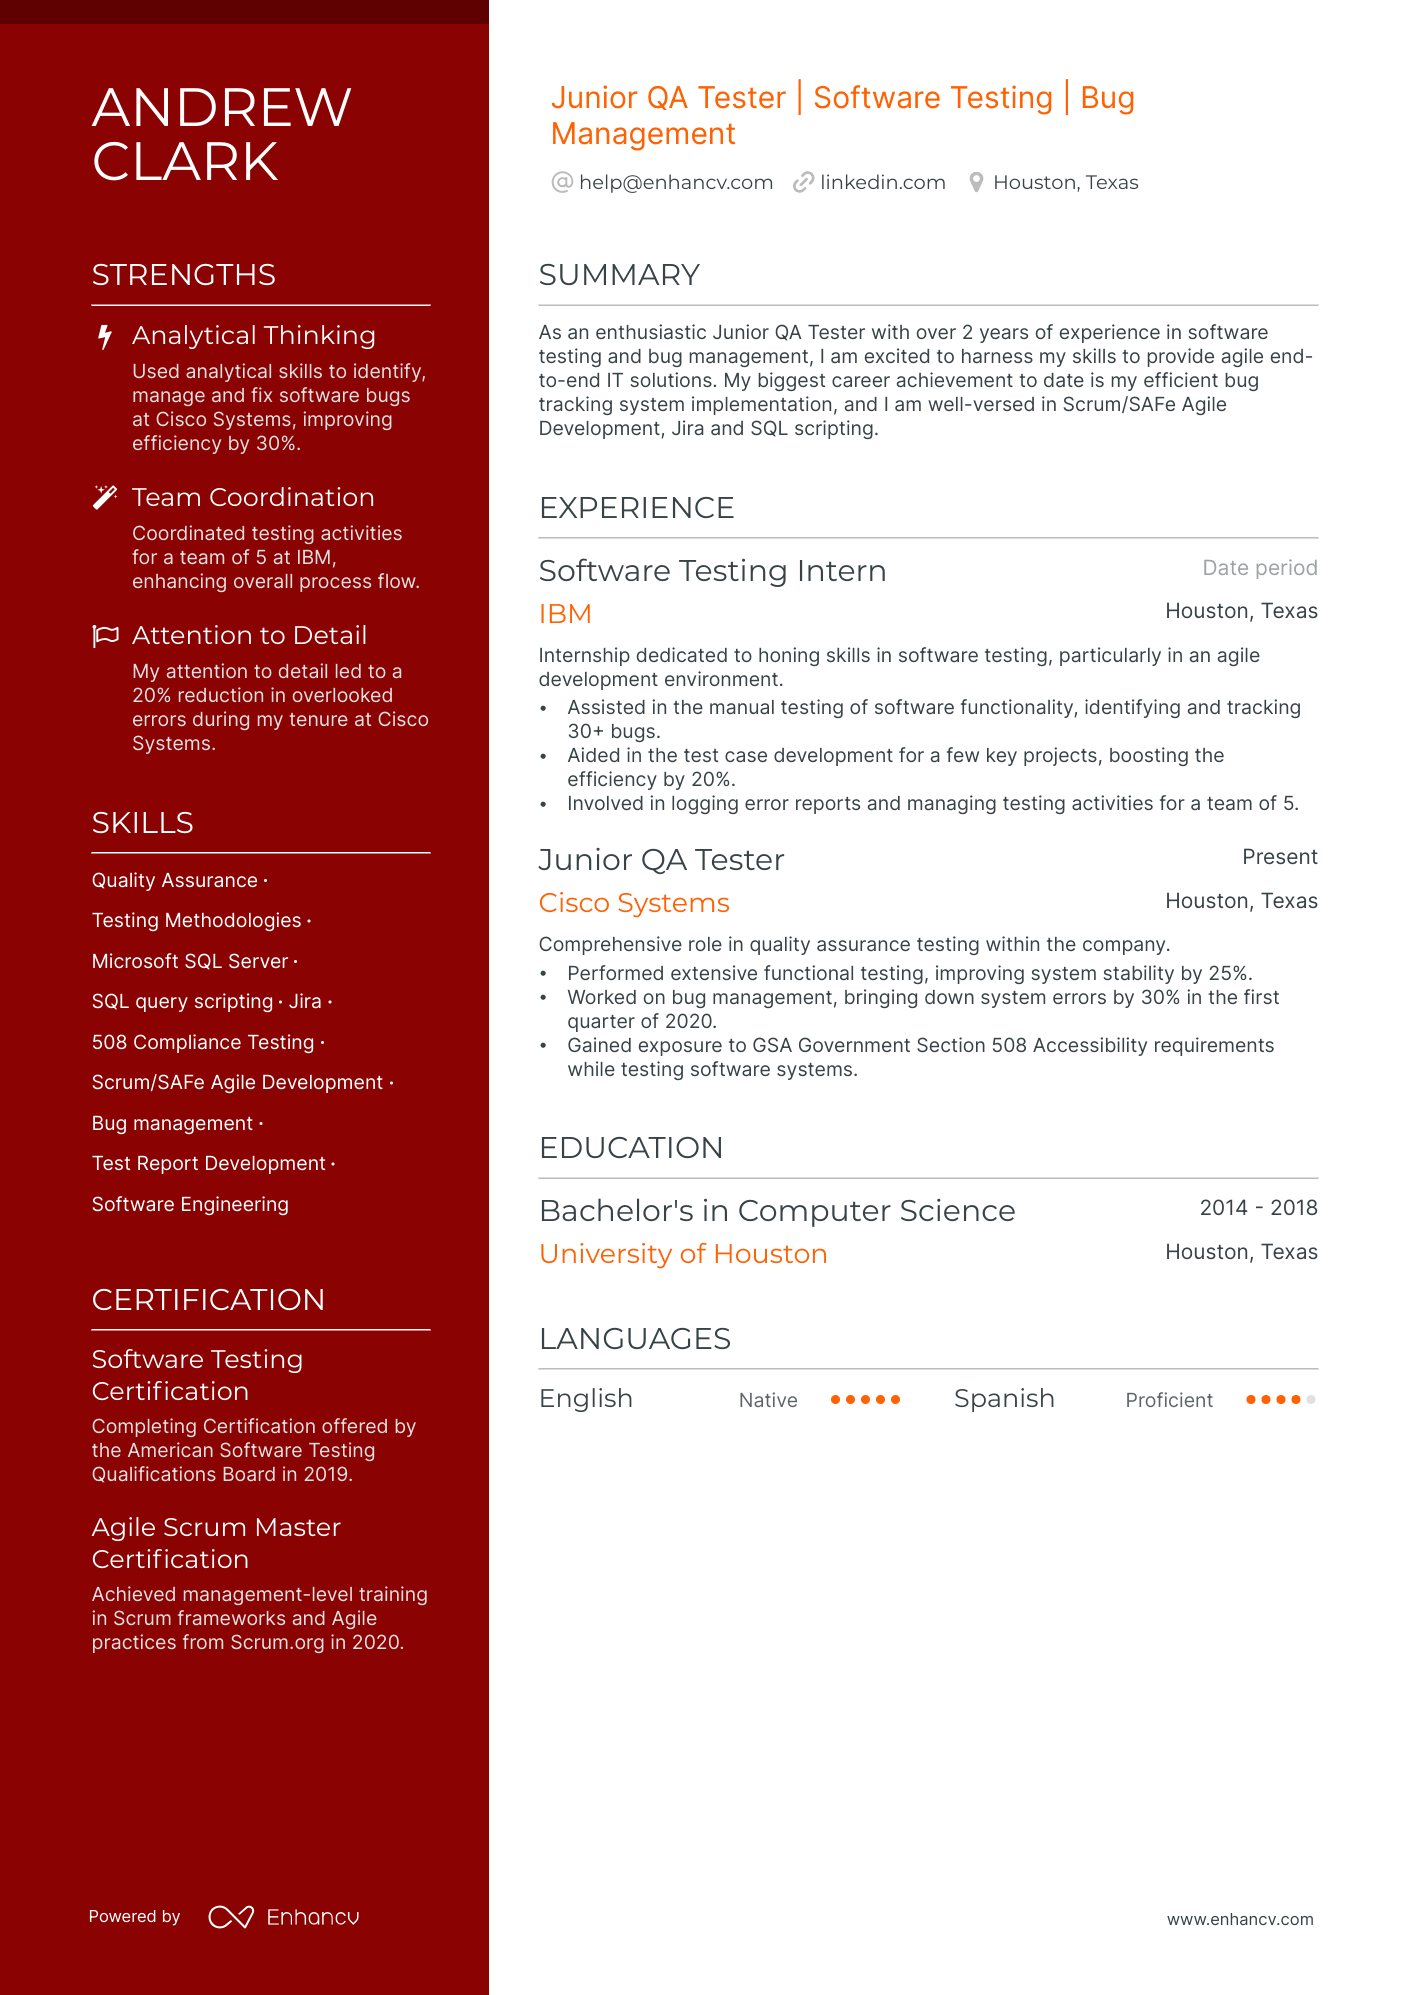 Junior QA Tester resume example